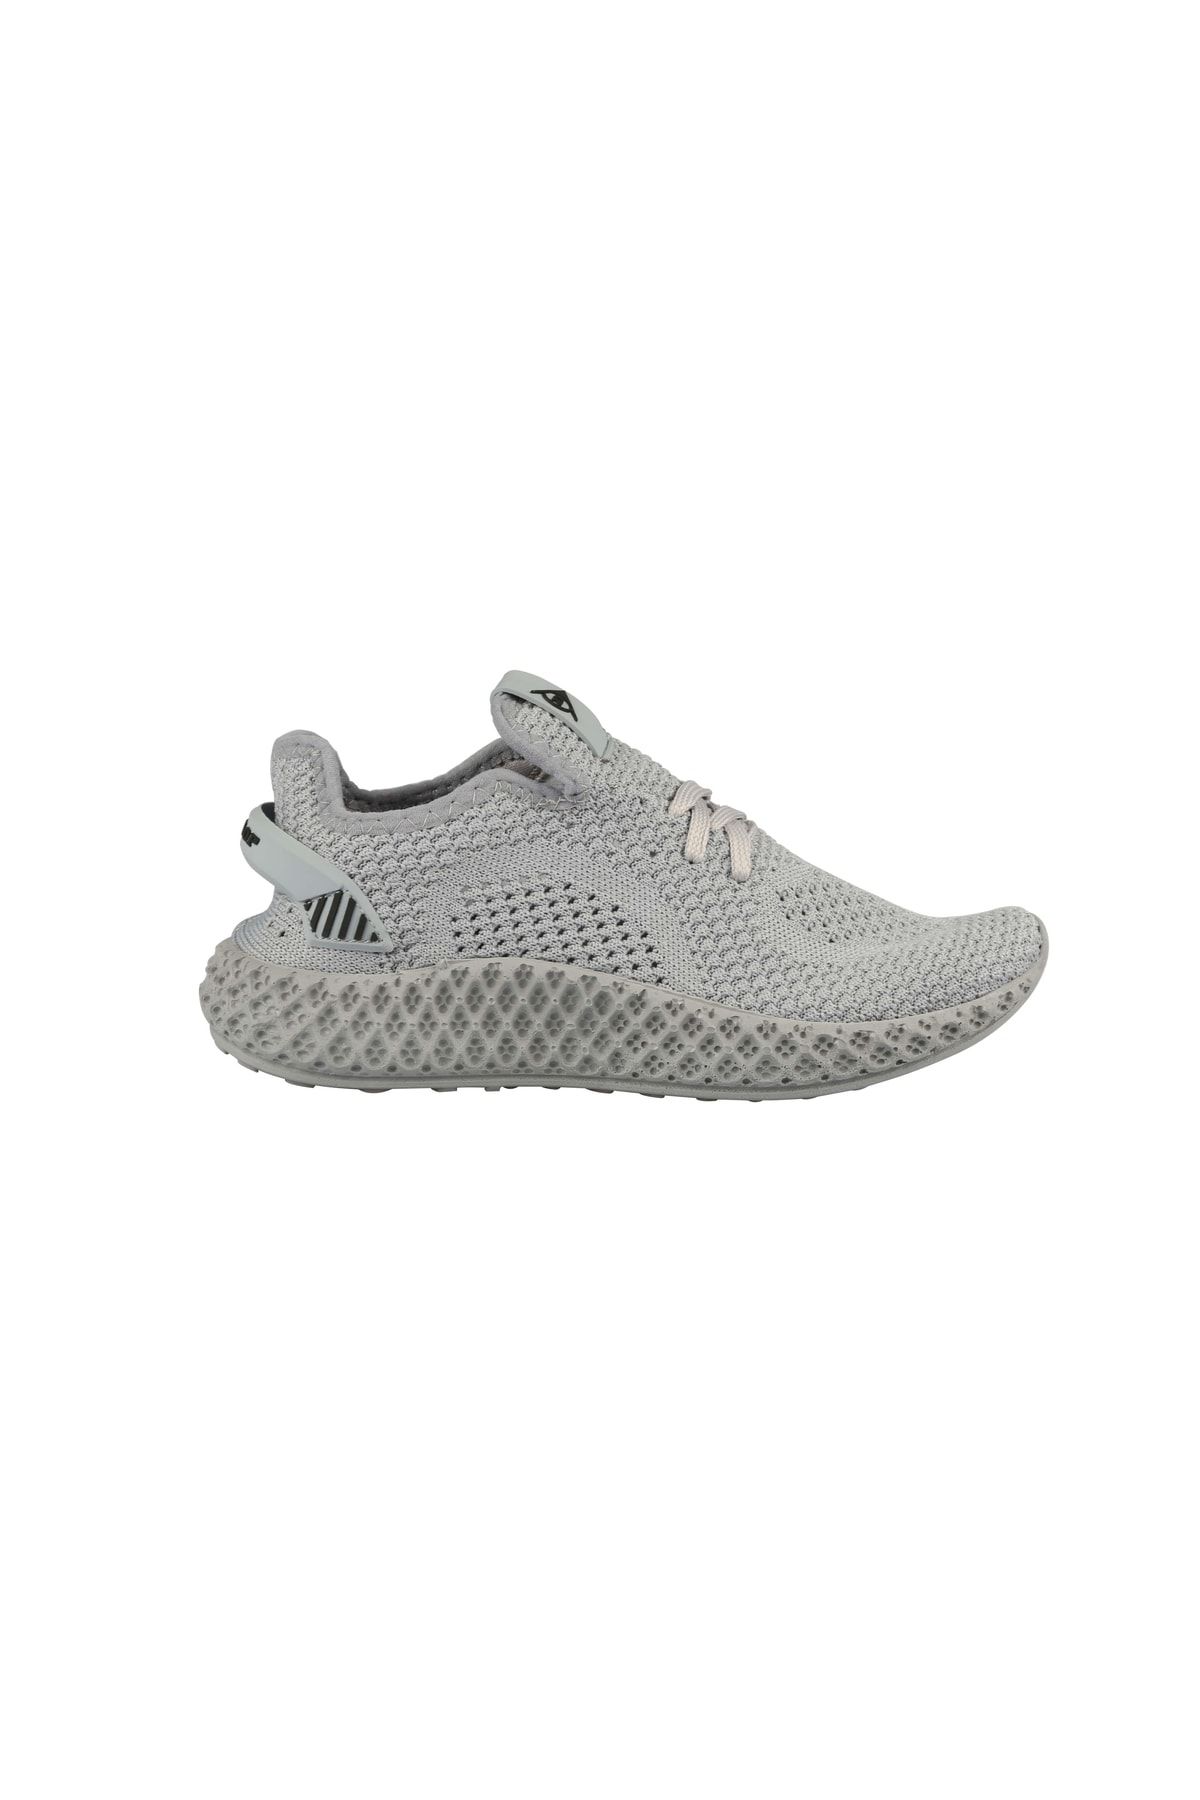 Dunlop ® | Dnp-2300-3482 Gri - Kadın Spor Ayakkabı